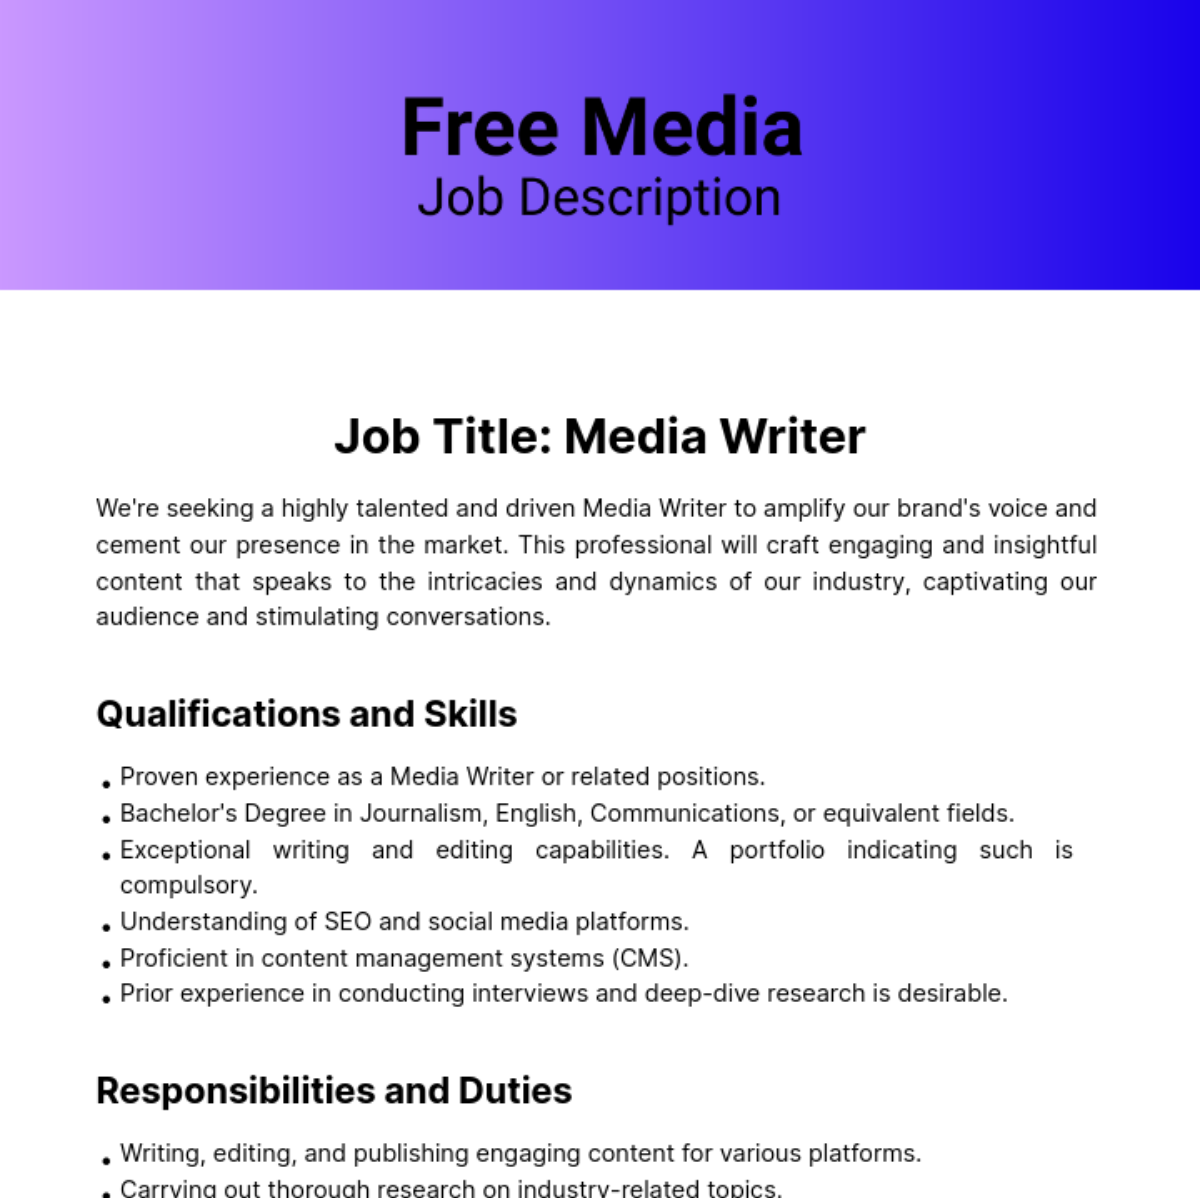 Free Media Job Description Template